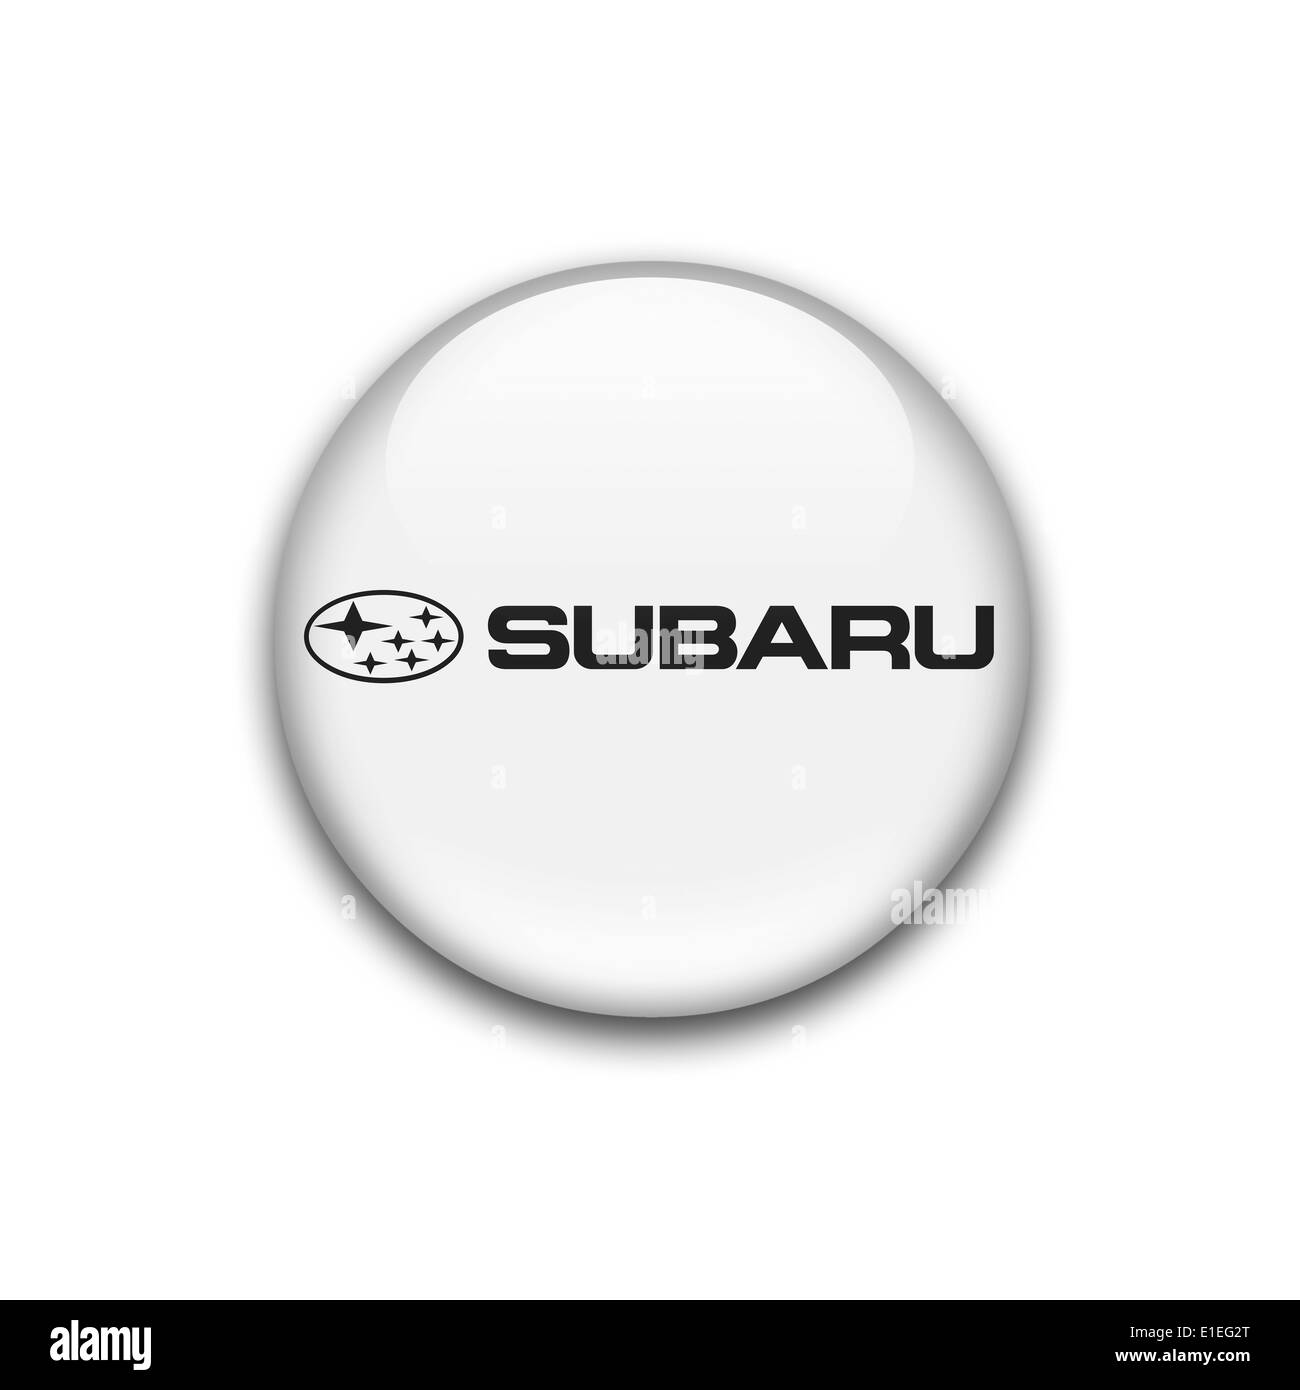 Subaru logo icon flag emblem symbol Stock Photo